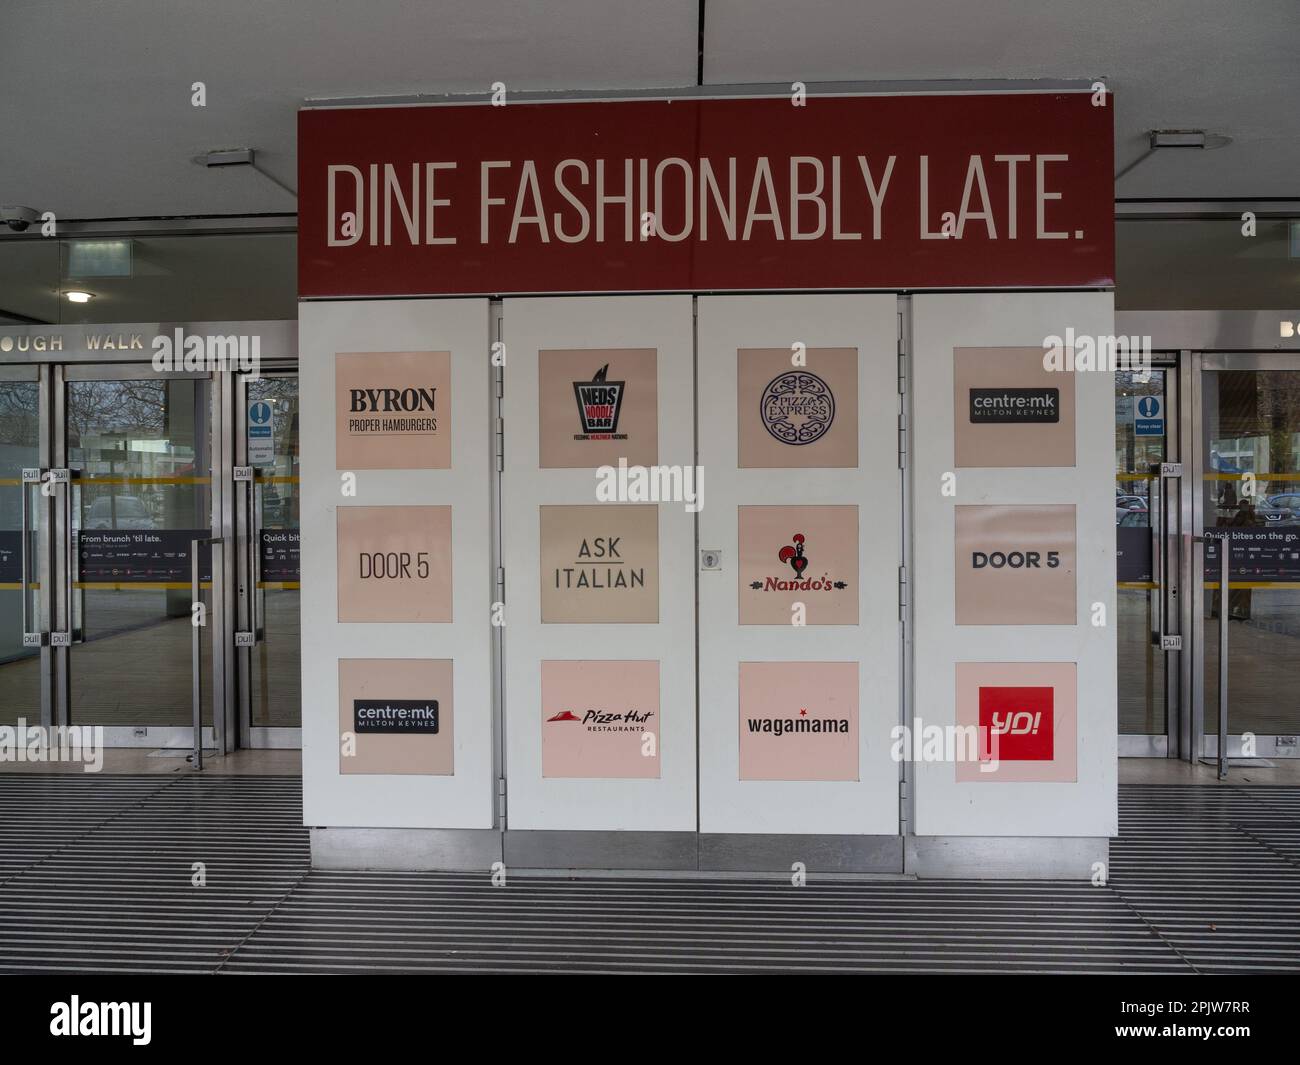 Dinner Modern Late Sign, mit Liste der Restaurants, Centre; MK Shopping Centre, Milton Keynes, Großbritannien Stockfoto